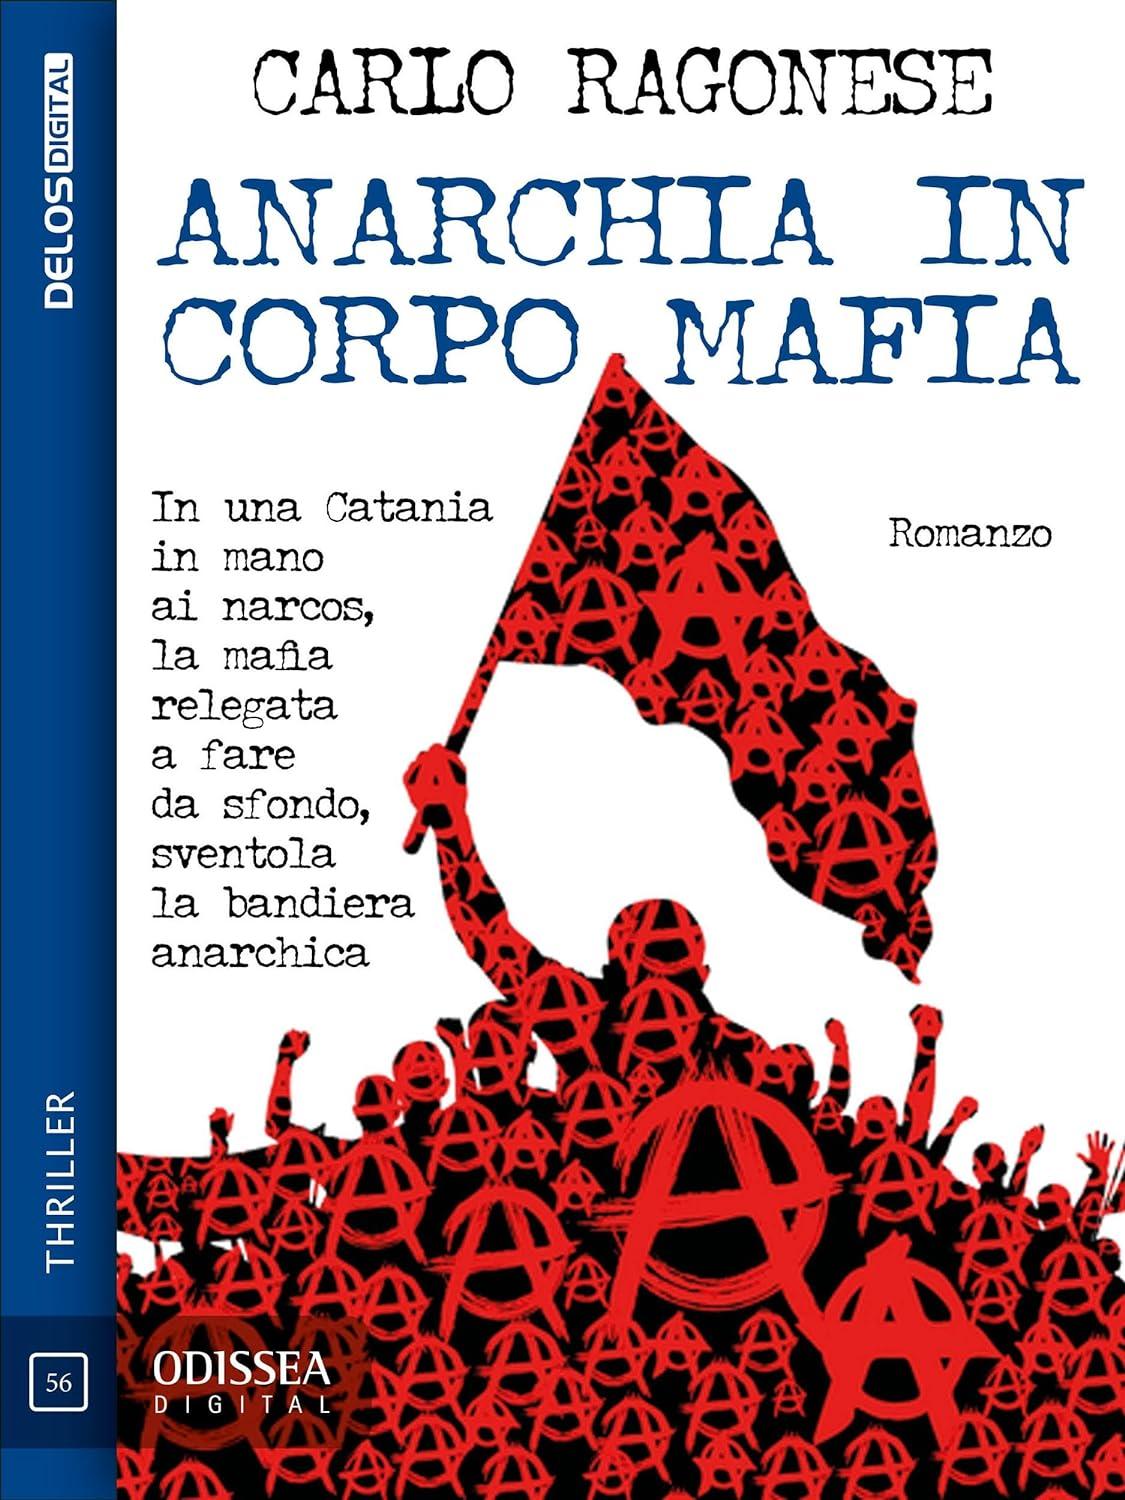 Libro "Anarchia in corpo mafia" di Carlo Ragonese